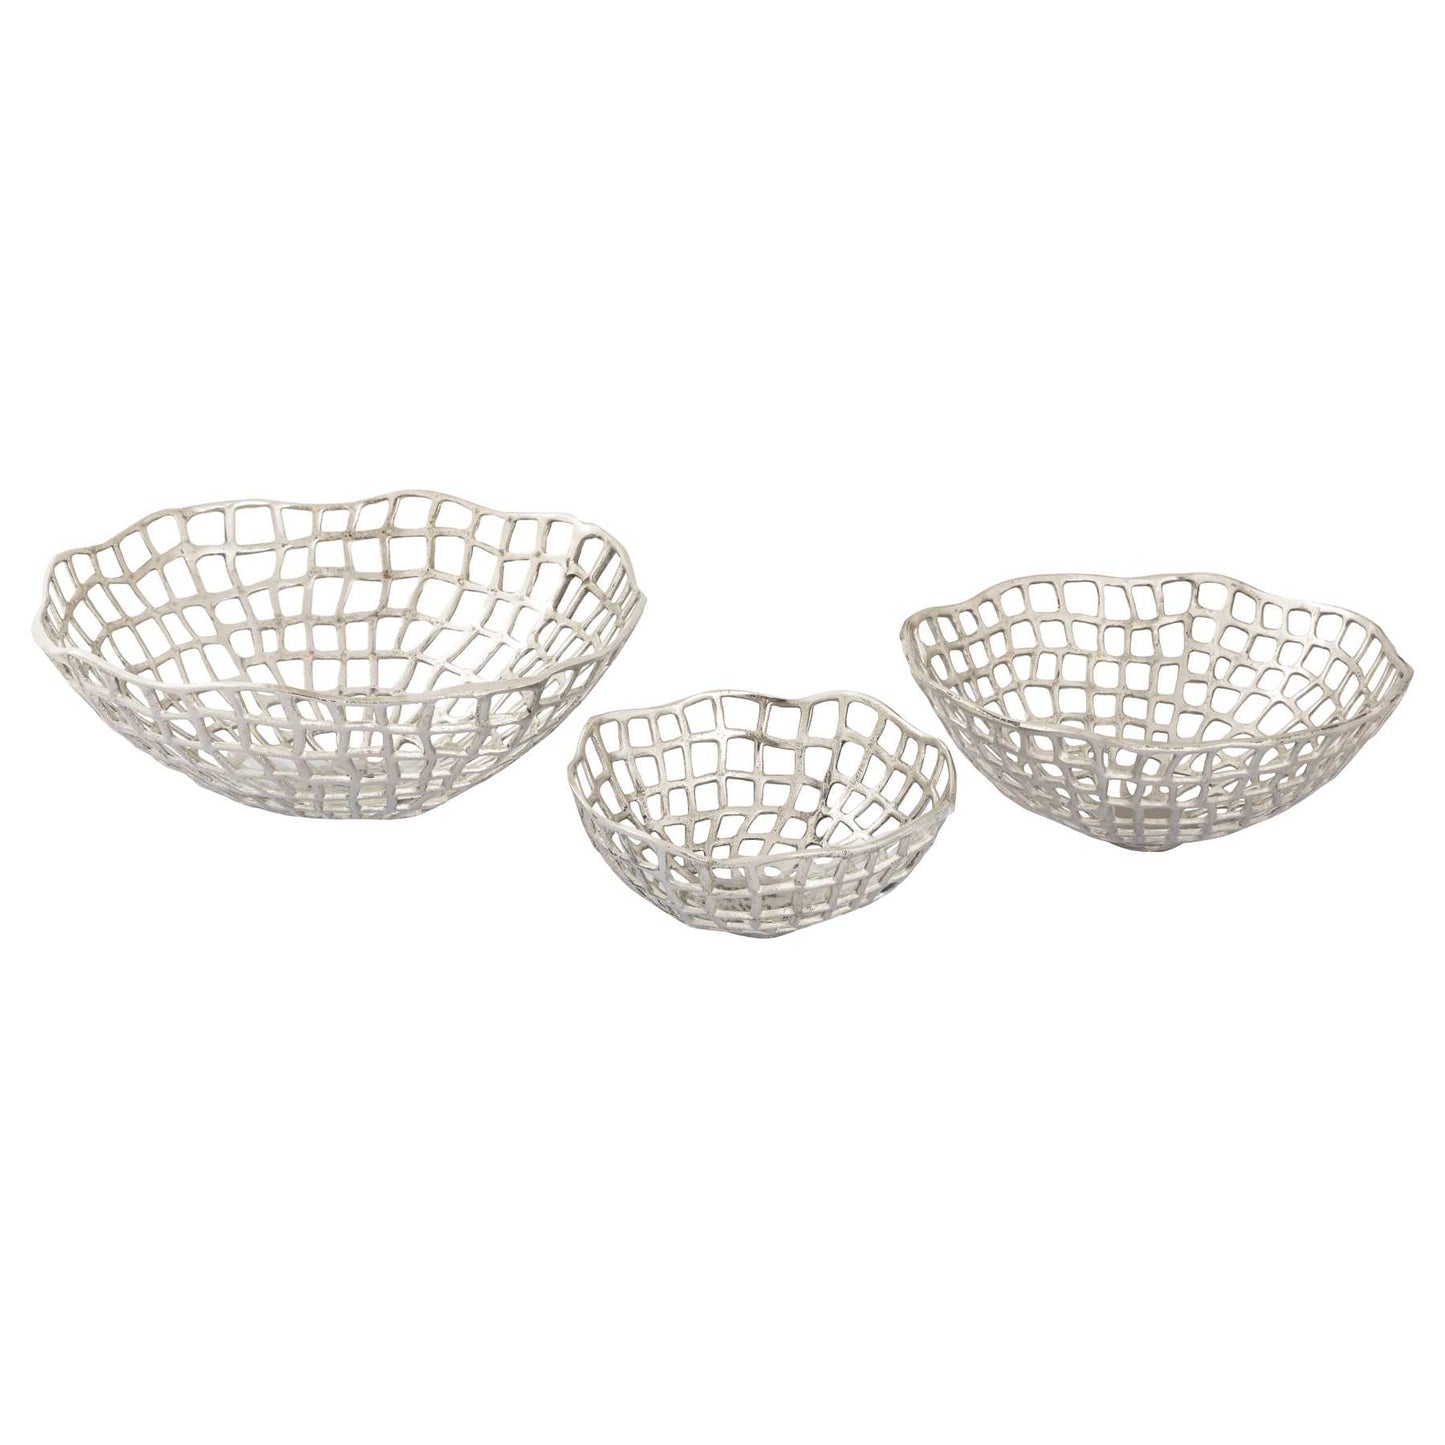 Shore Weave Baskets - Set Of 3 By ELK |Bins, Baskets & Buckets |Modishstore - 2